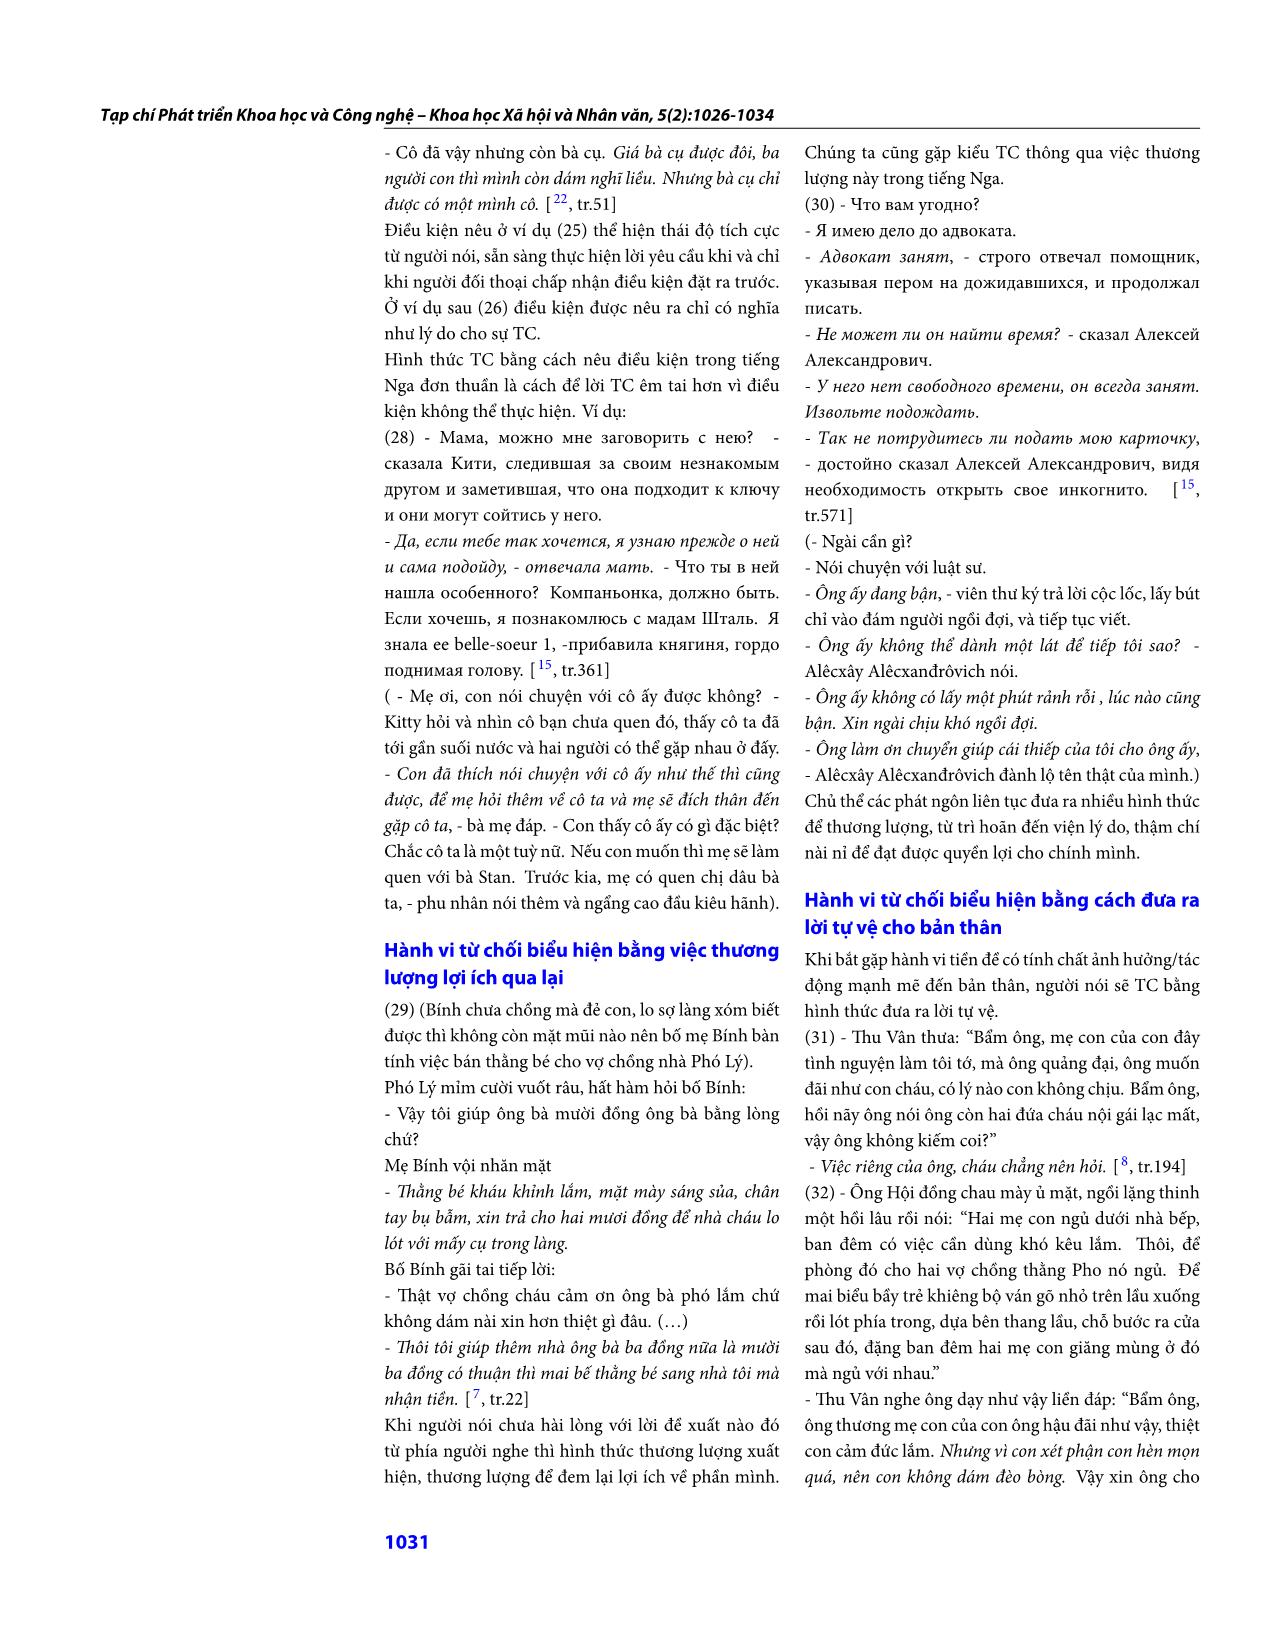 Những biểu hiện của hành vi từ chối gián tiếp trong tiếng Việt (có so với tiếng Nga) trang 6